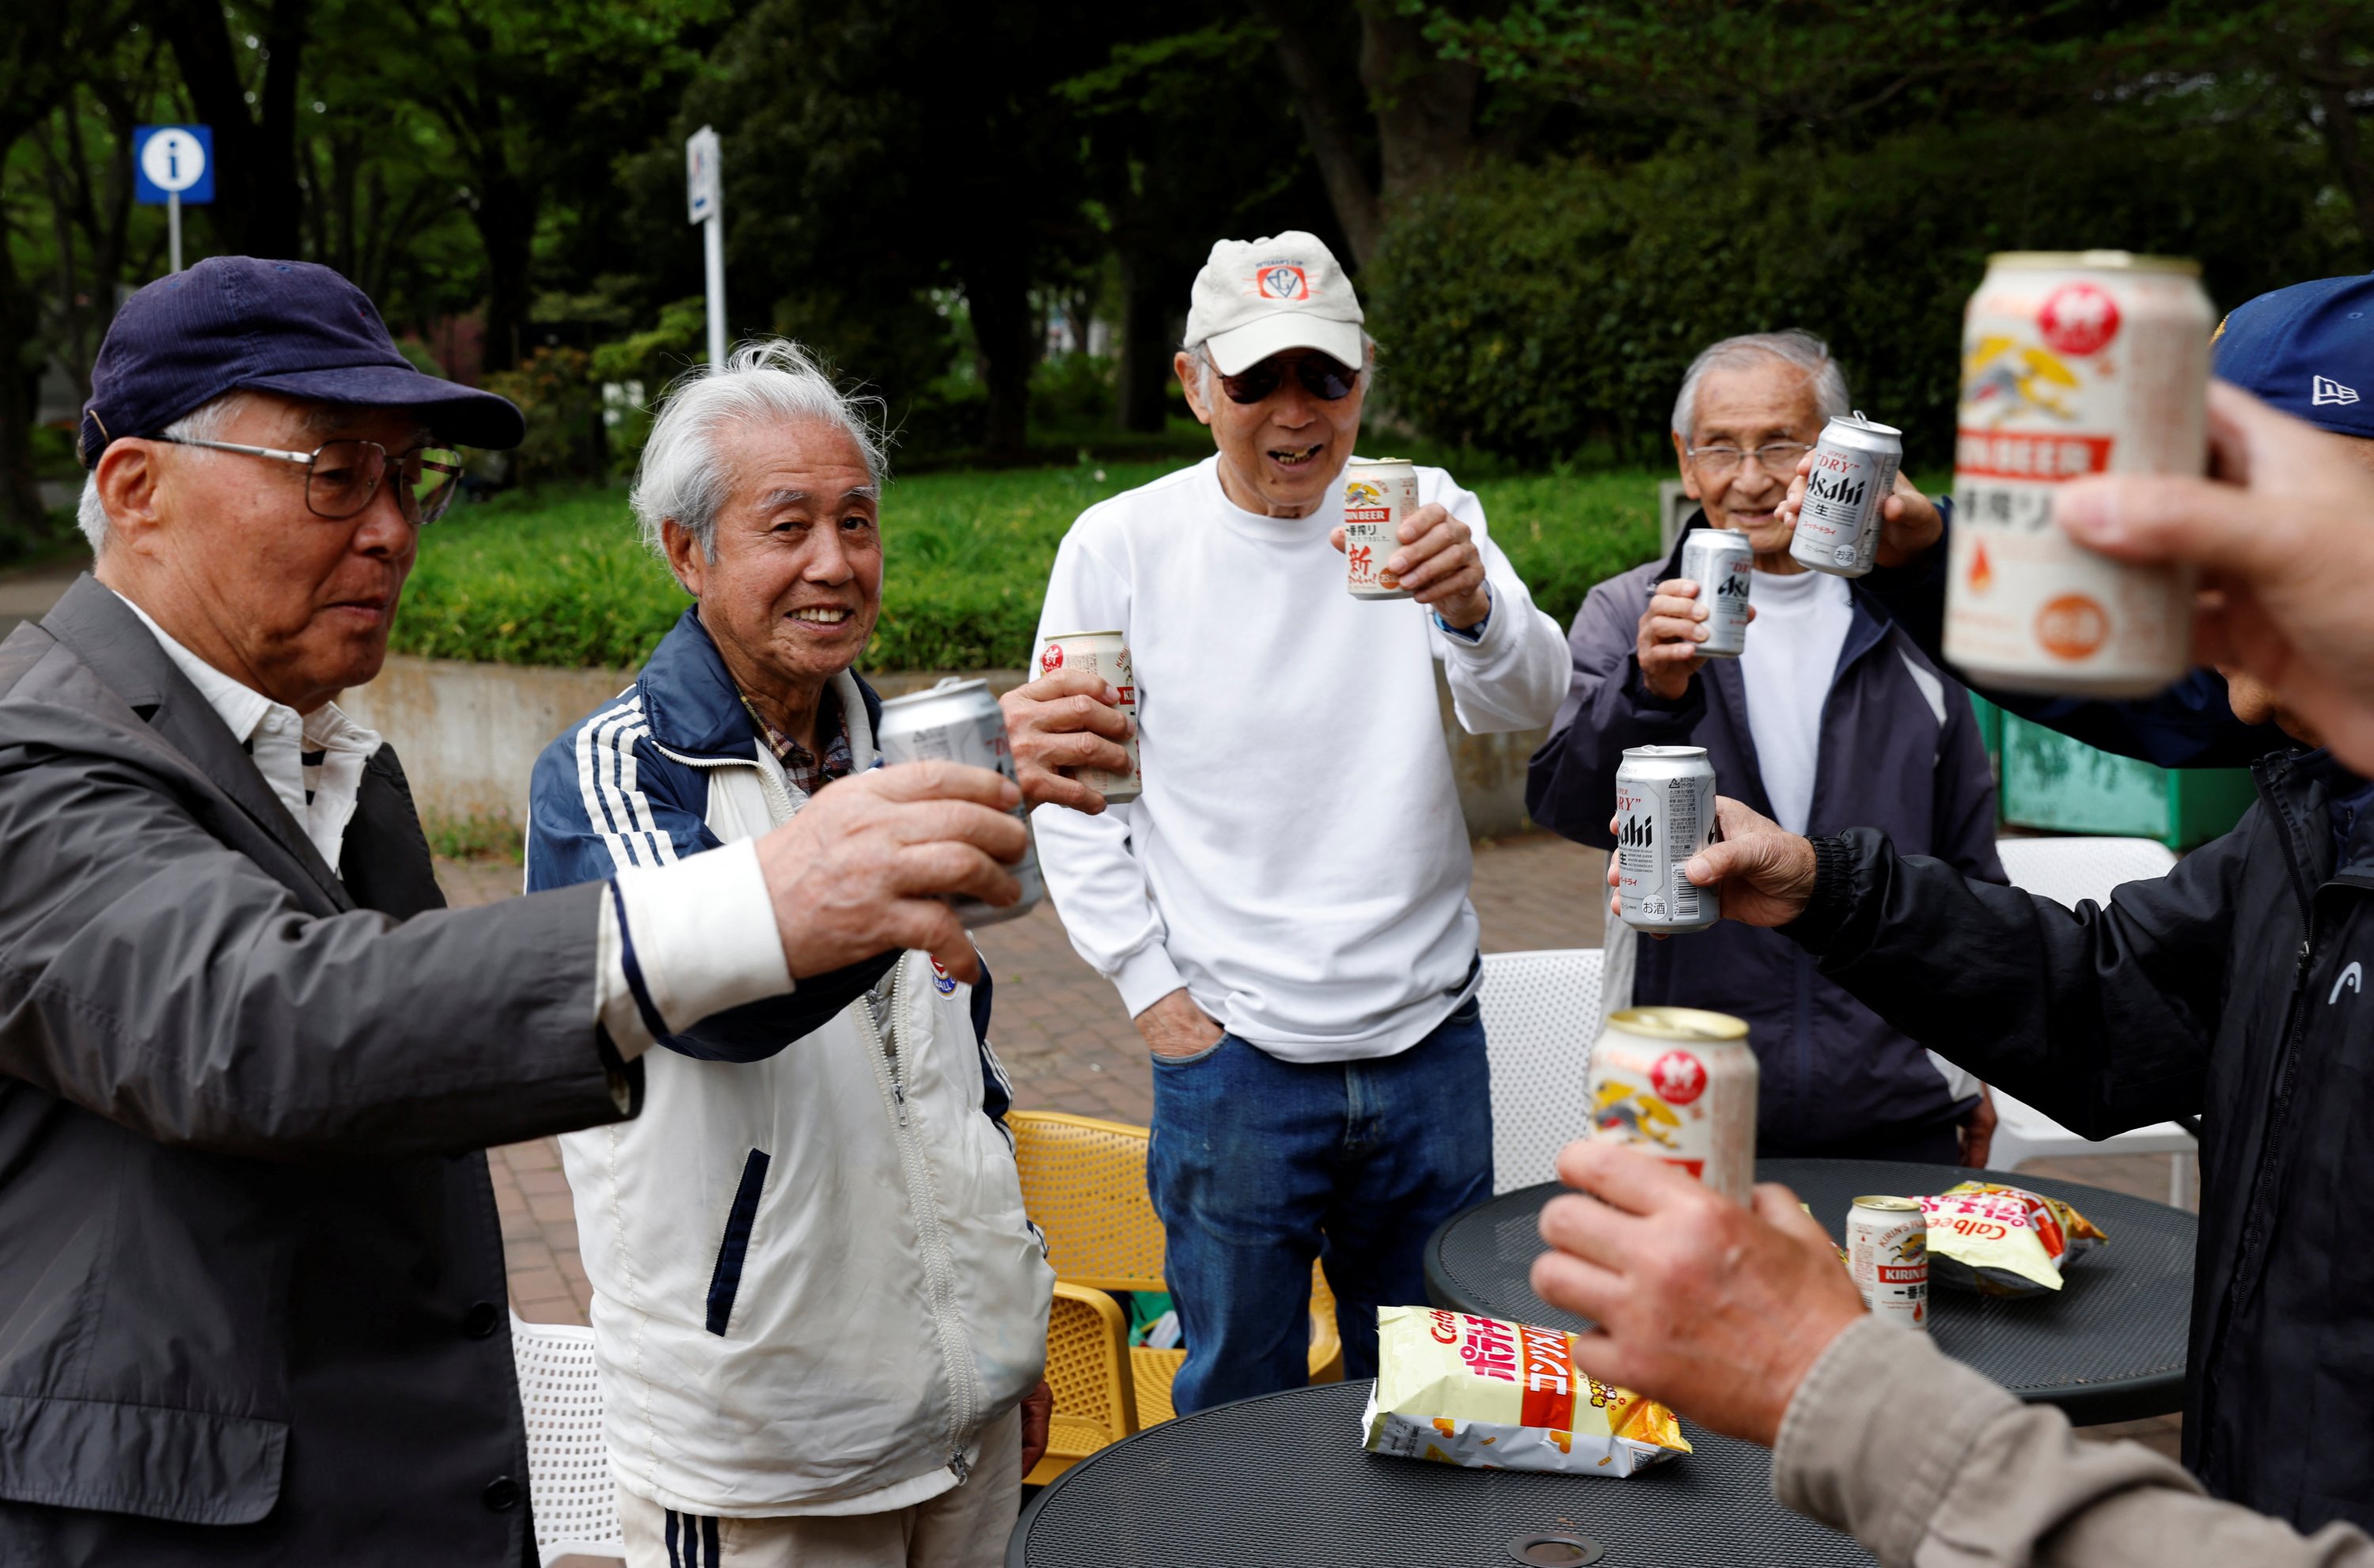 Gelandang Red Star Mutsuhiko Nomura (kiri ke-2) dan rekan satu timnya bersulang dengan bir kalengan di sebuah taman setelah pertandingan pembukaan SFL (Soccer For Life) 80 League, Tokyo, Jepang, 12 April 2023. (Foto Reuters)